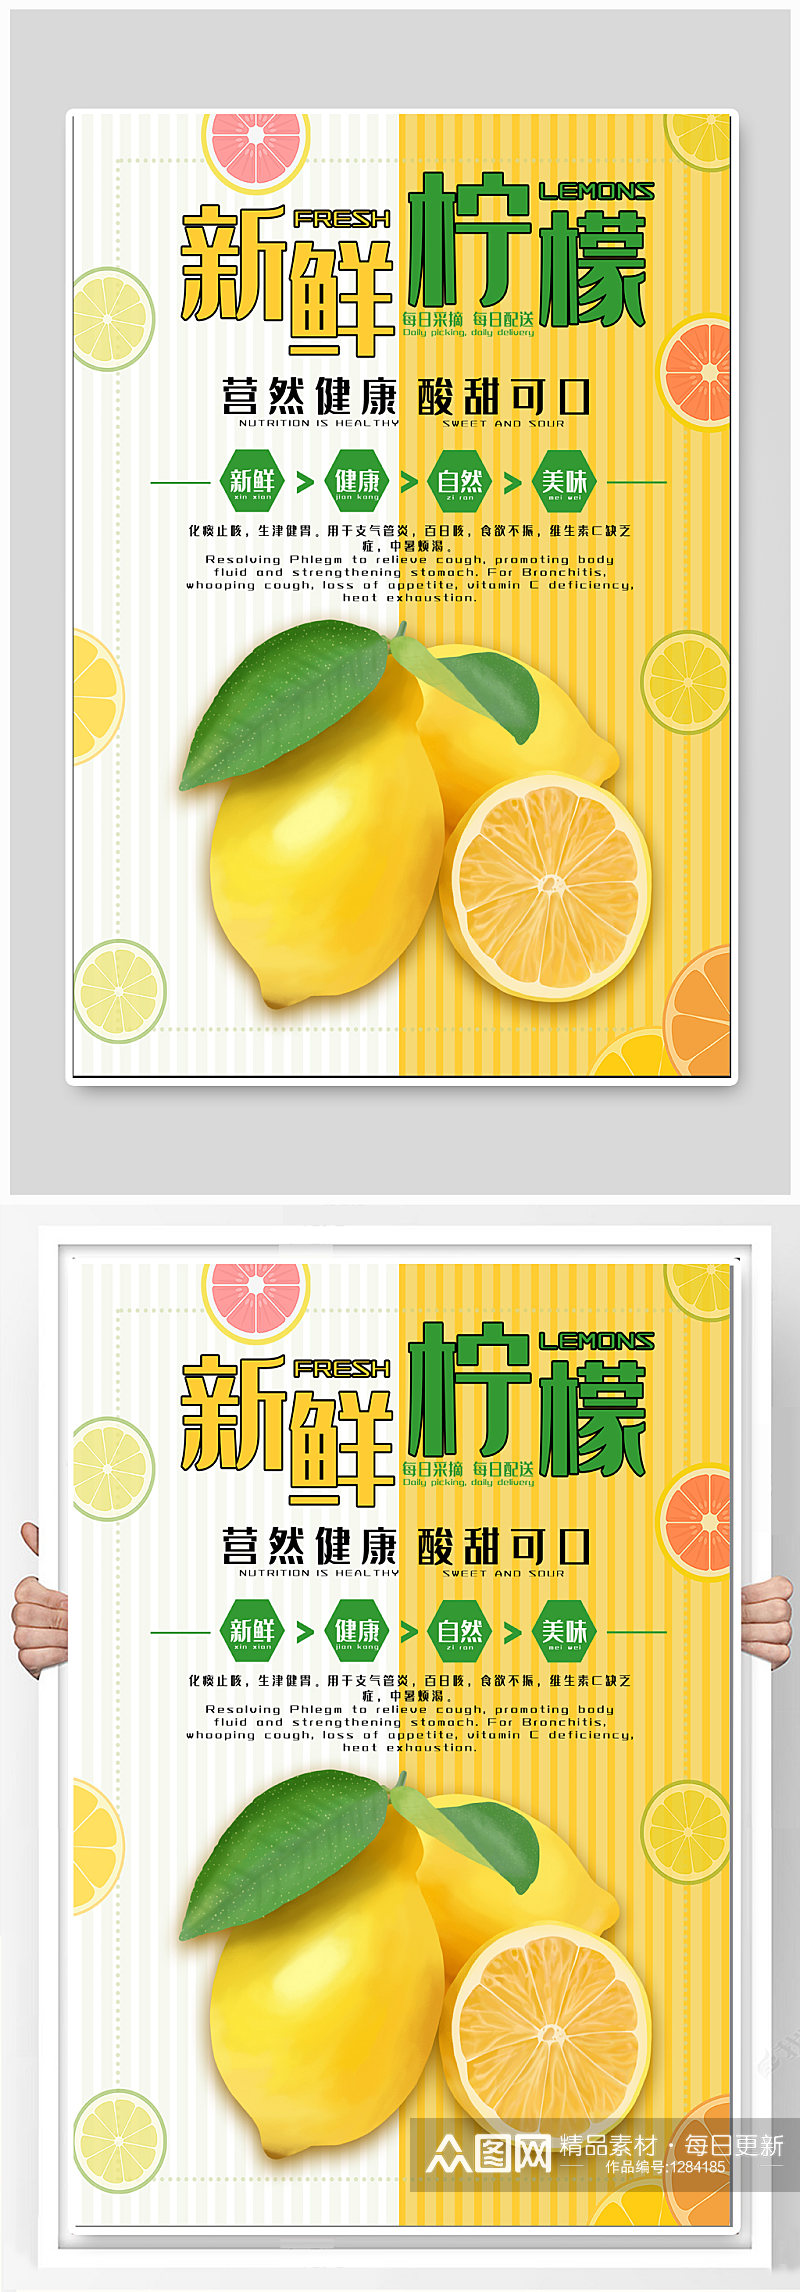 新鲜柠檬水果宣传海报素材